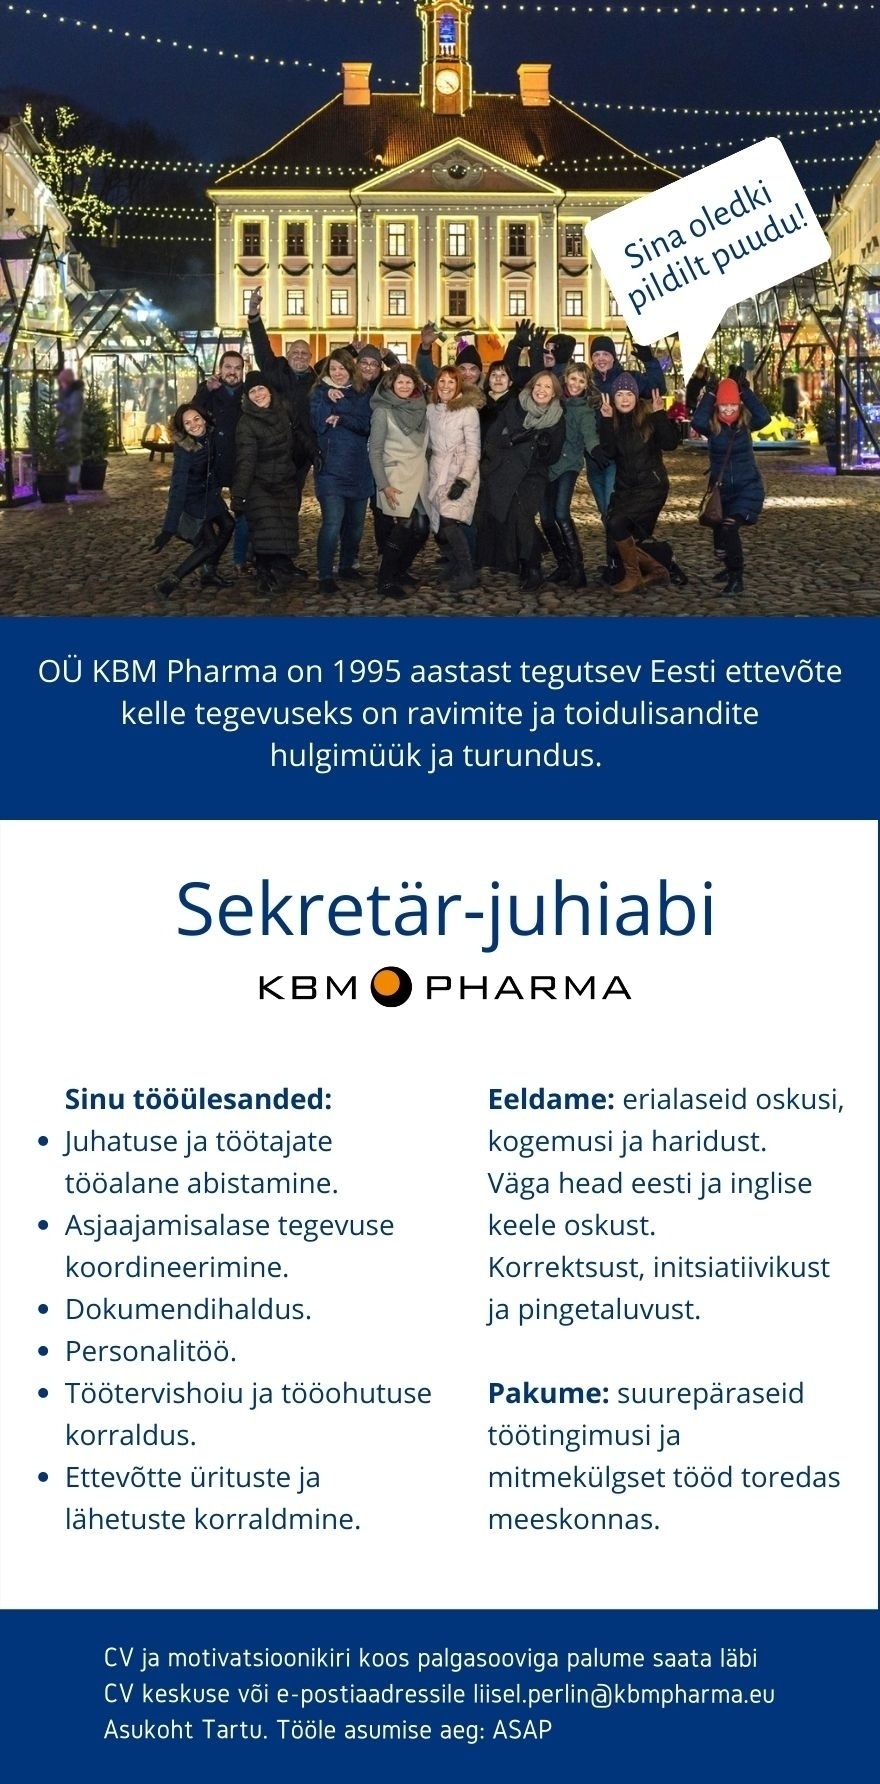 KBM Pharma OÜ Sekretär-juhiabi